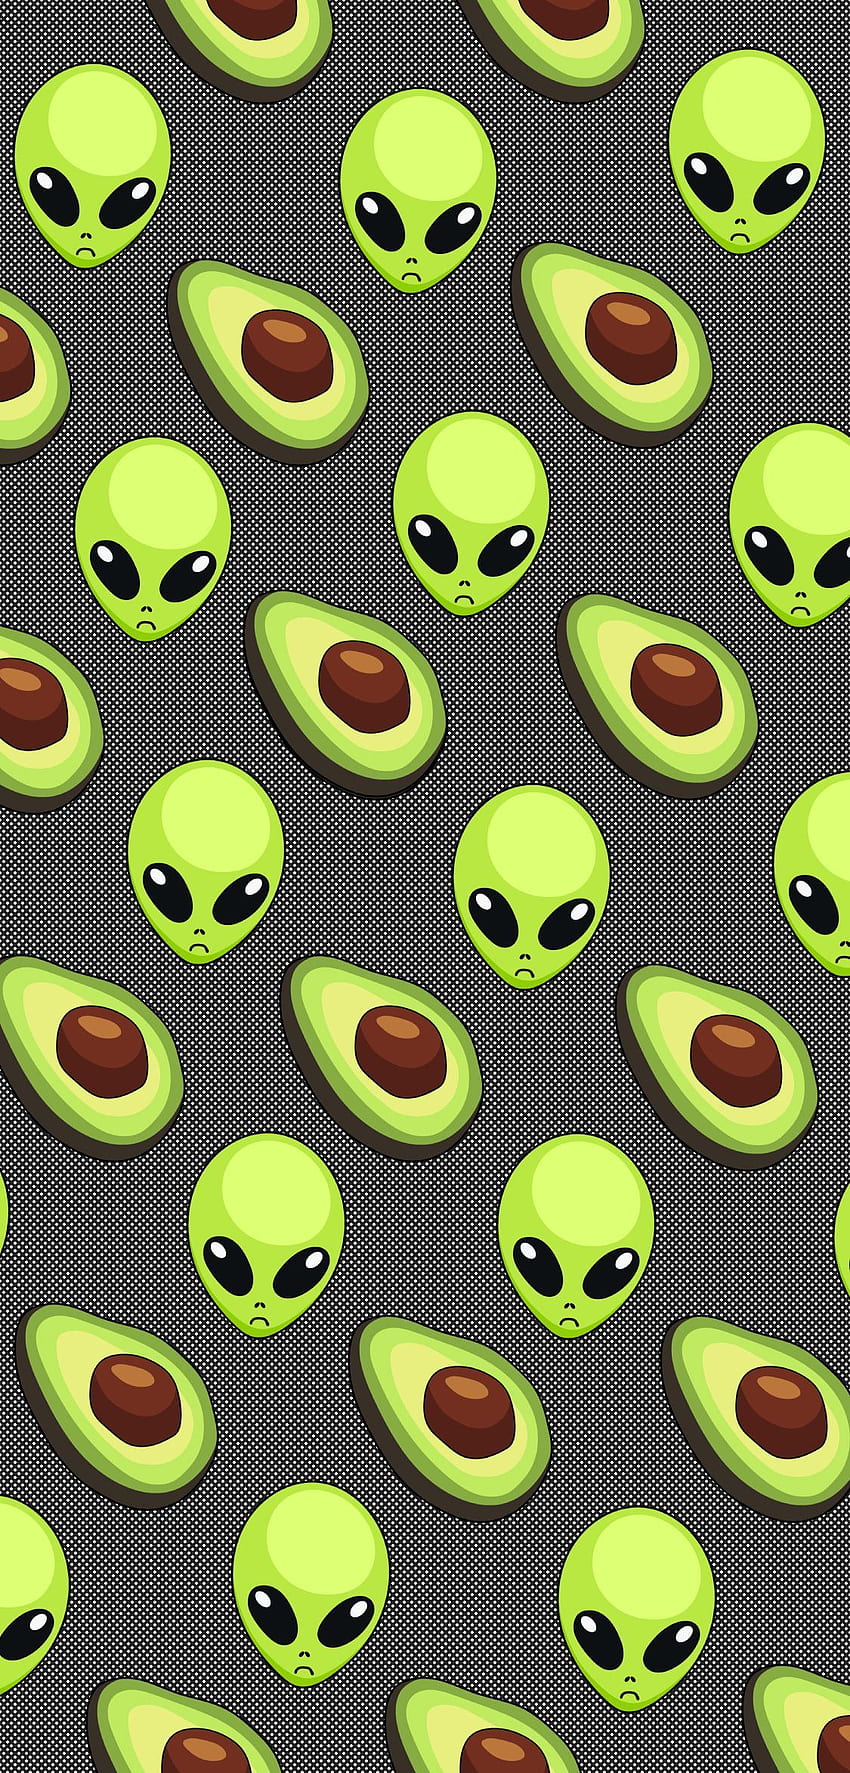 VSCO Girl Avocado and Alien Phone en 2020. Citas divertidas de iPhone, Dibujos animados de aguacate, Teléfono negro, Alien verde genial fondo de pantalla del teléfono